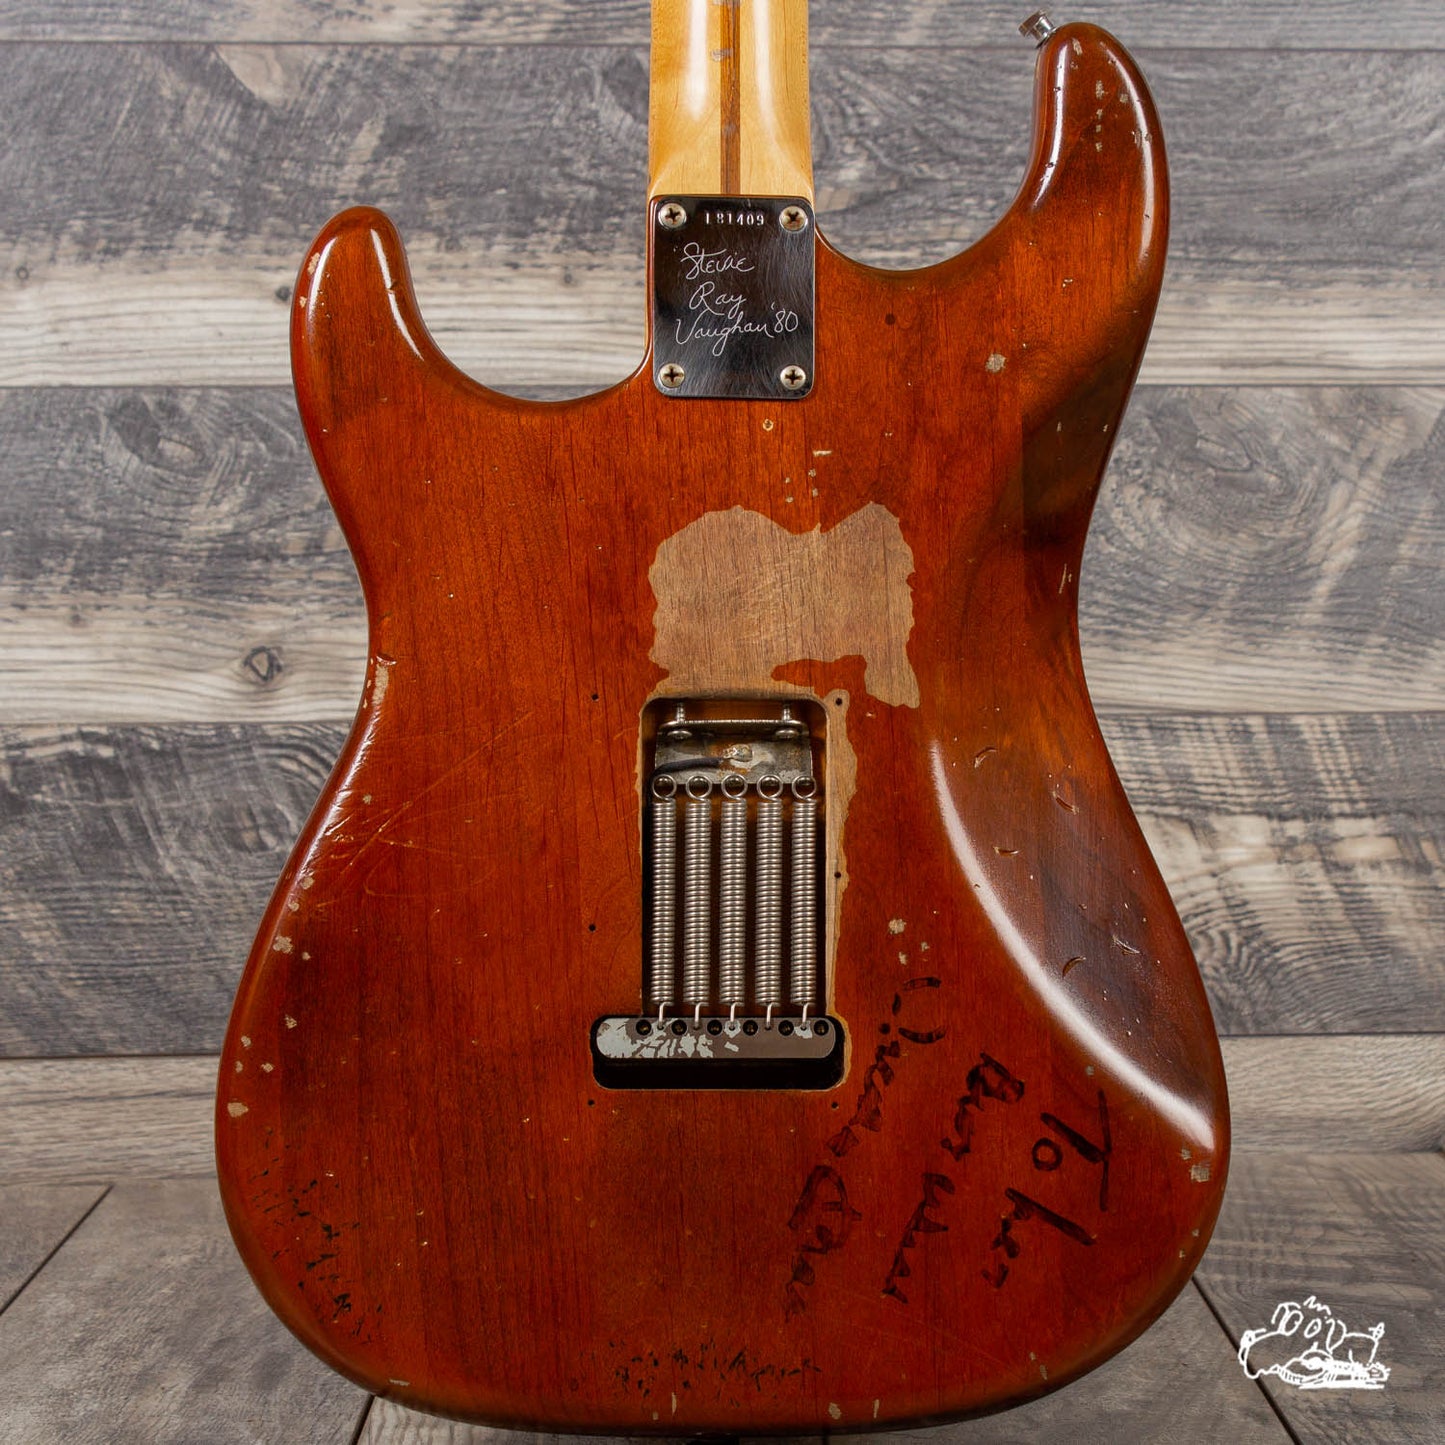 2007 Fender Custom Shop "Lenny" Stratocaster